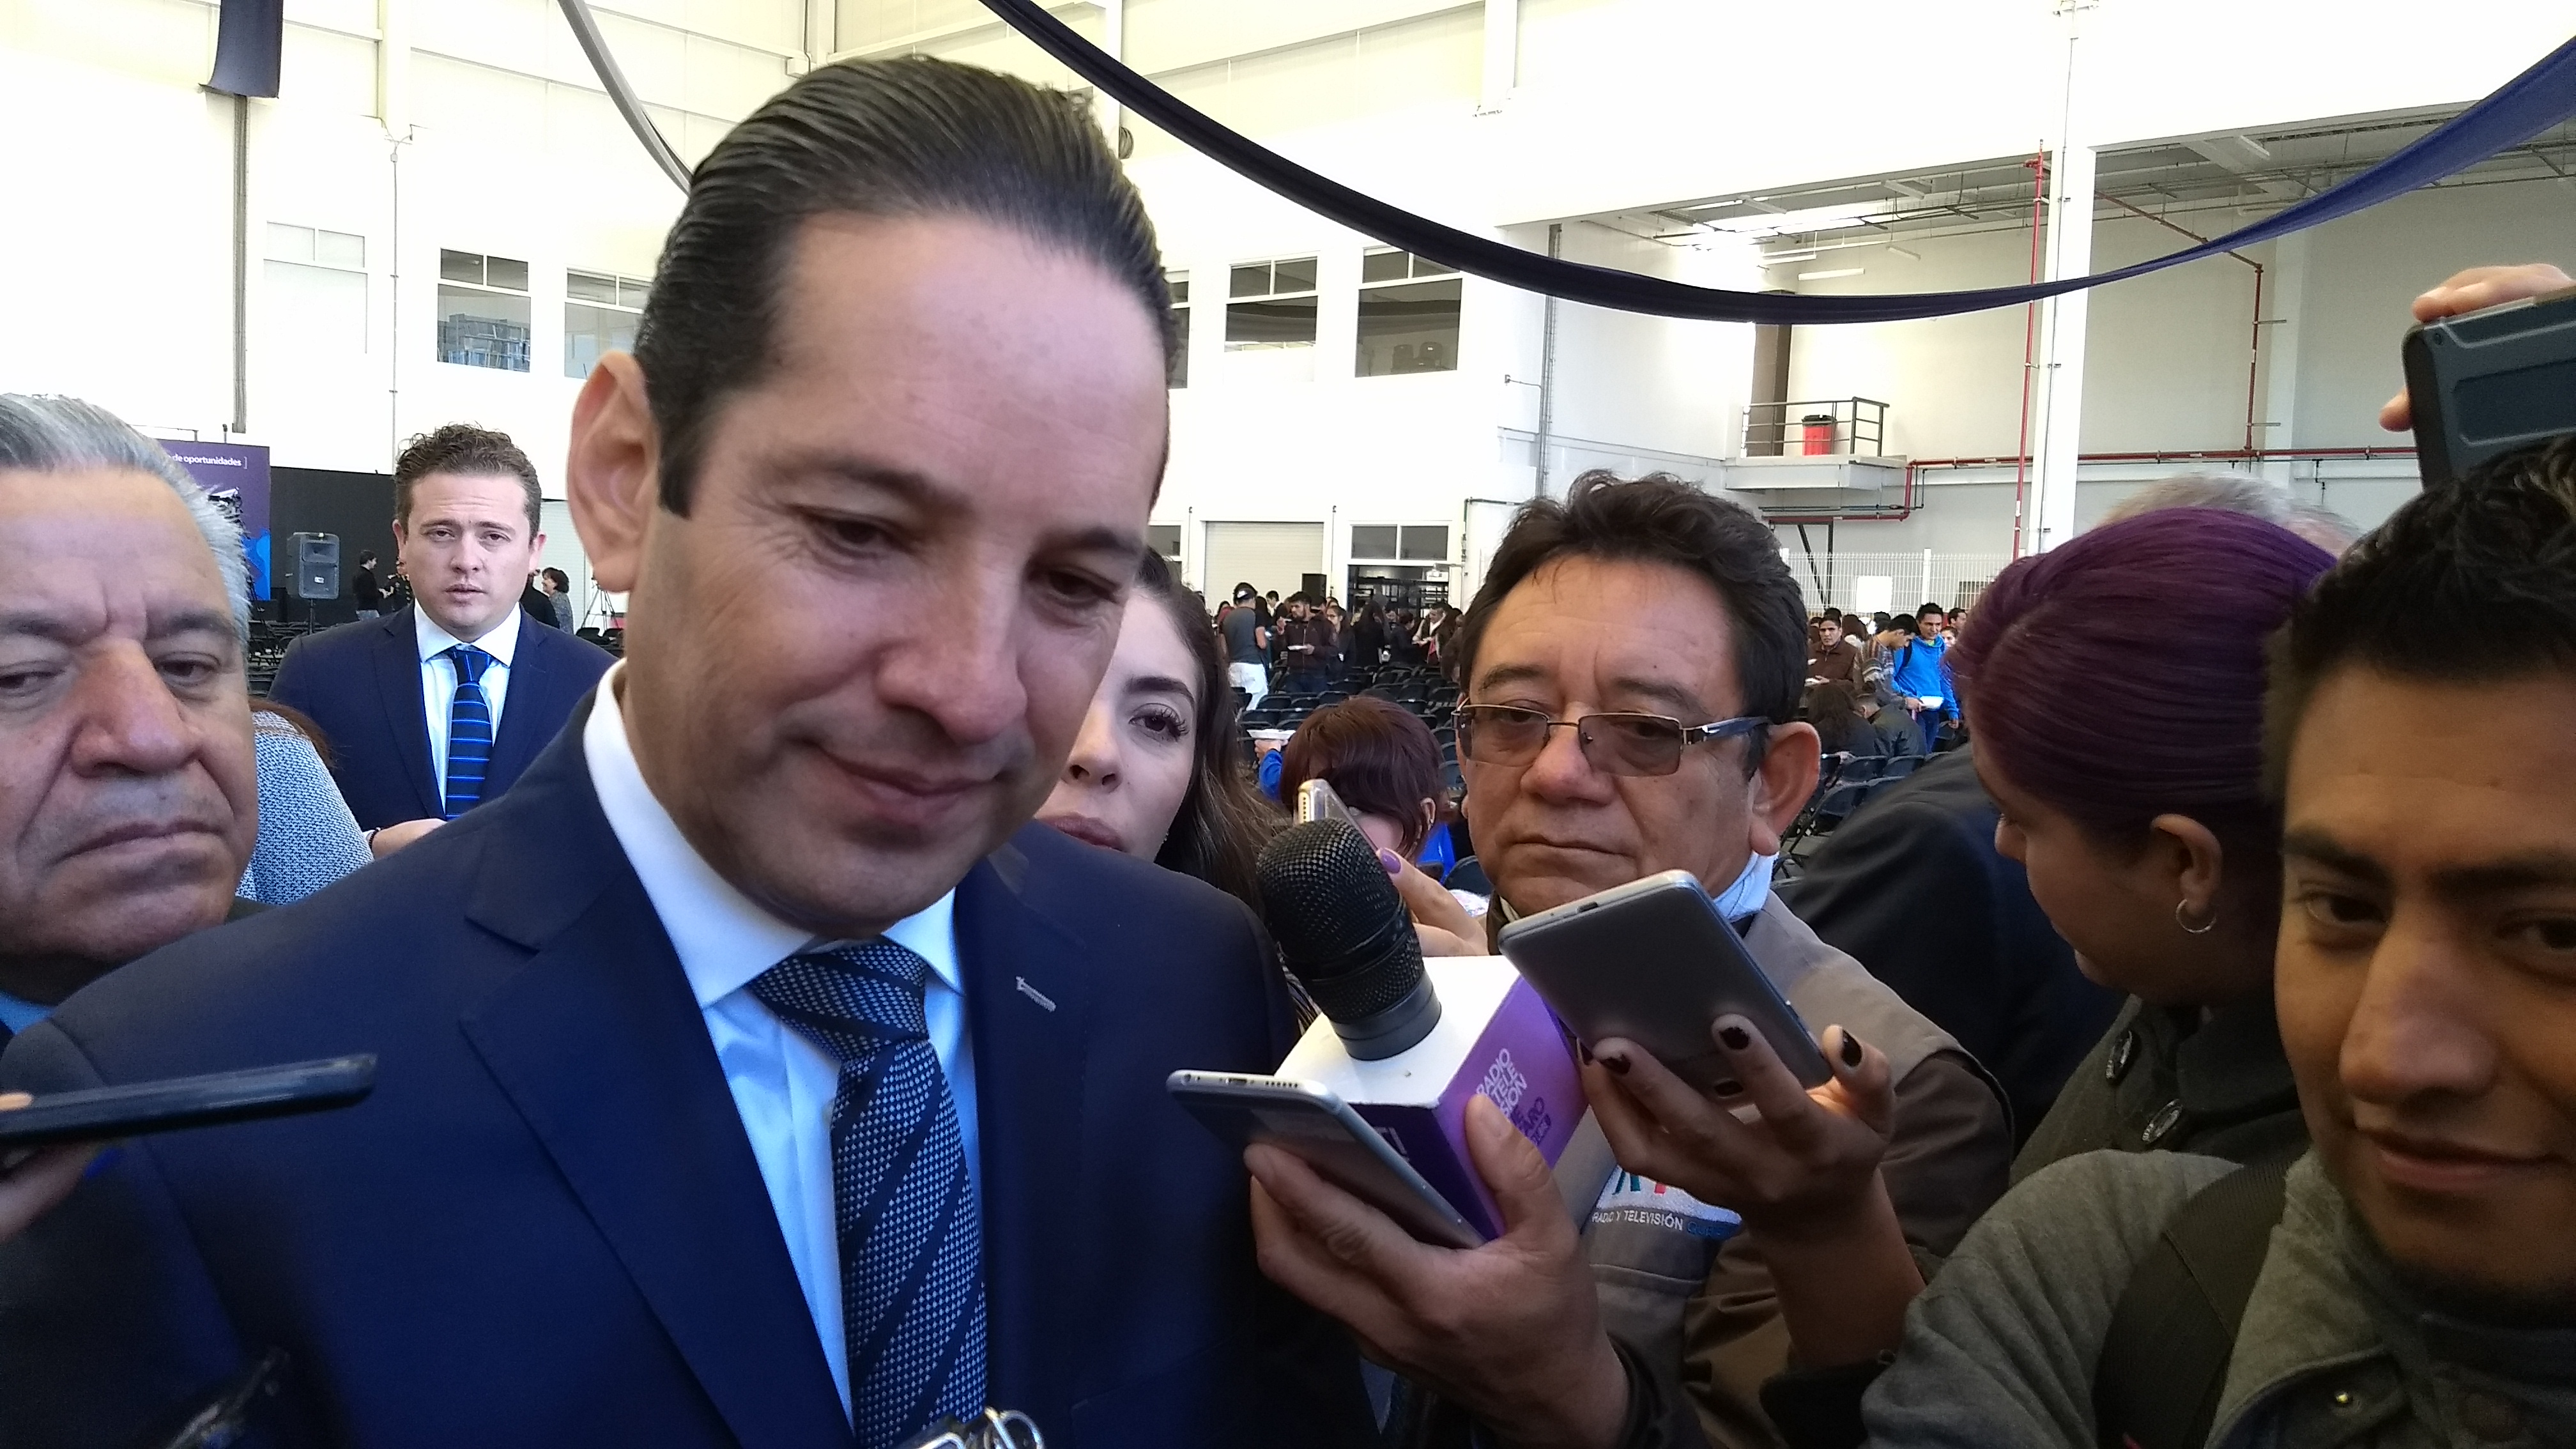  “Querétaro está muy bien en seguridad”: Pancho Domínguez